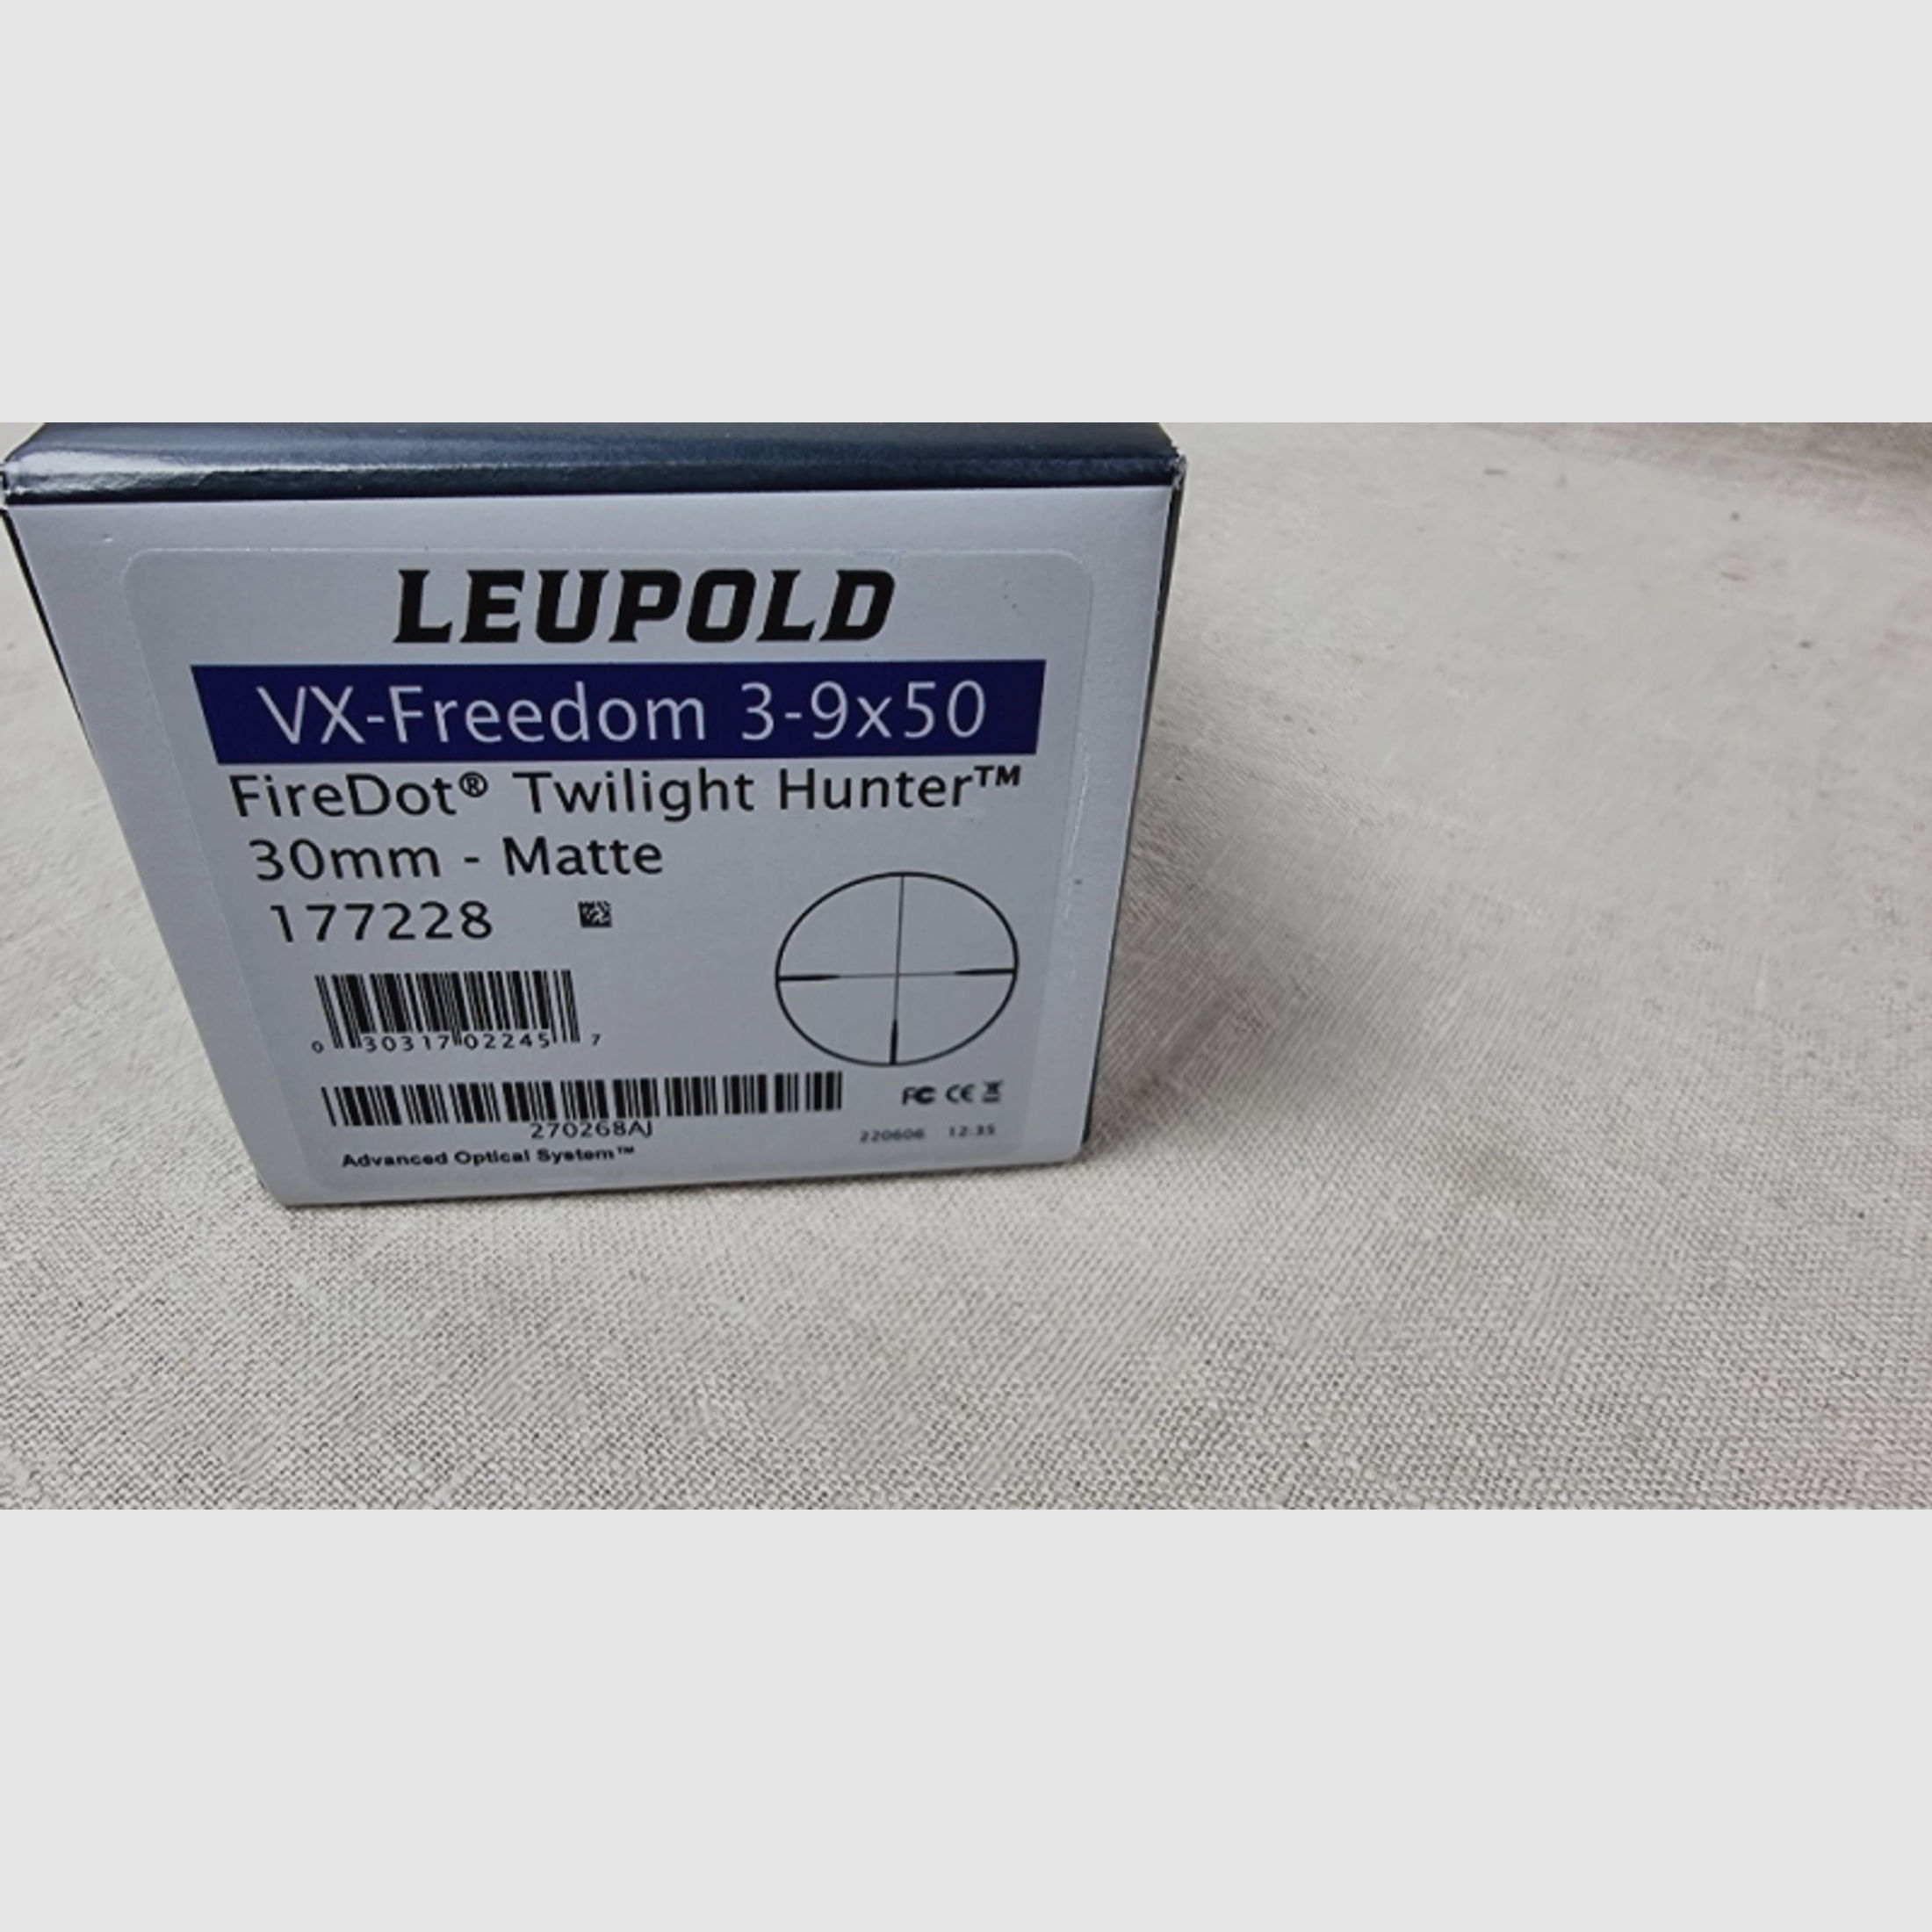 Leupold VX-Freedom 3-9x50 FireDot No.177228